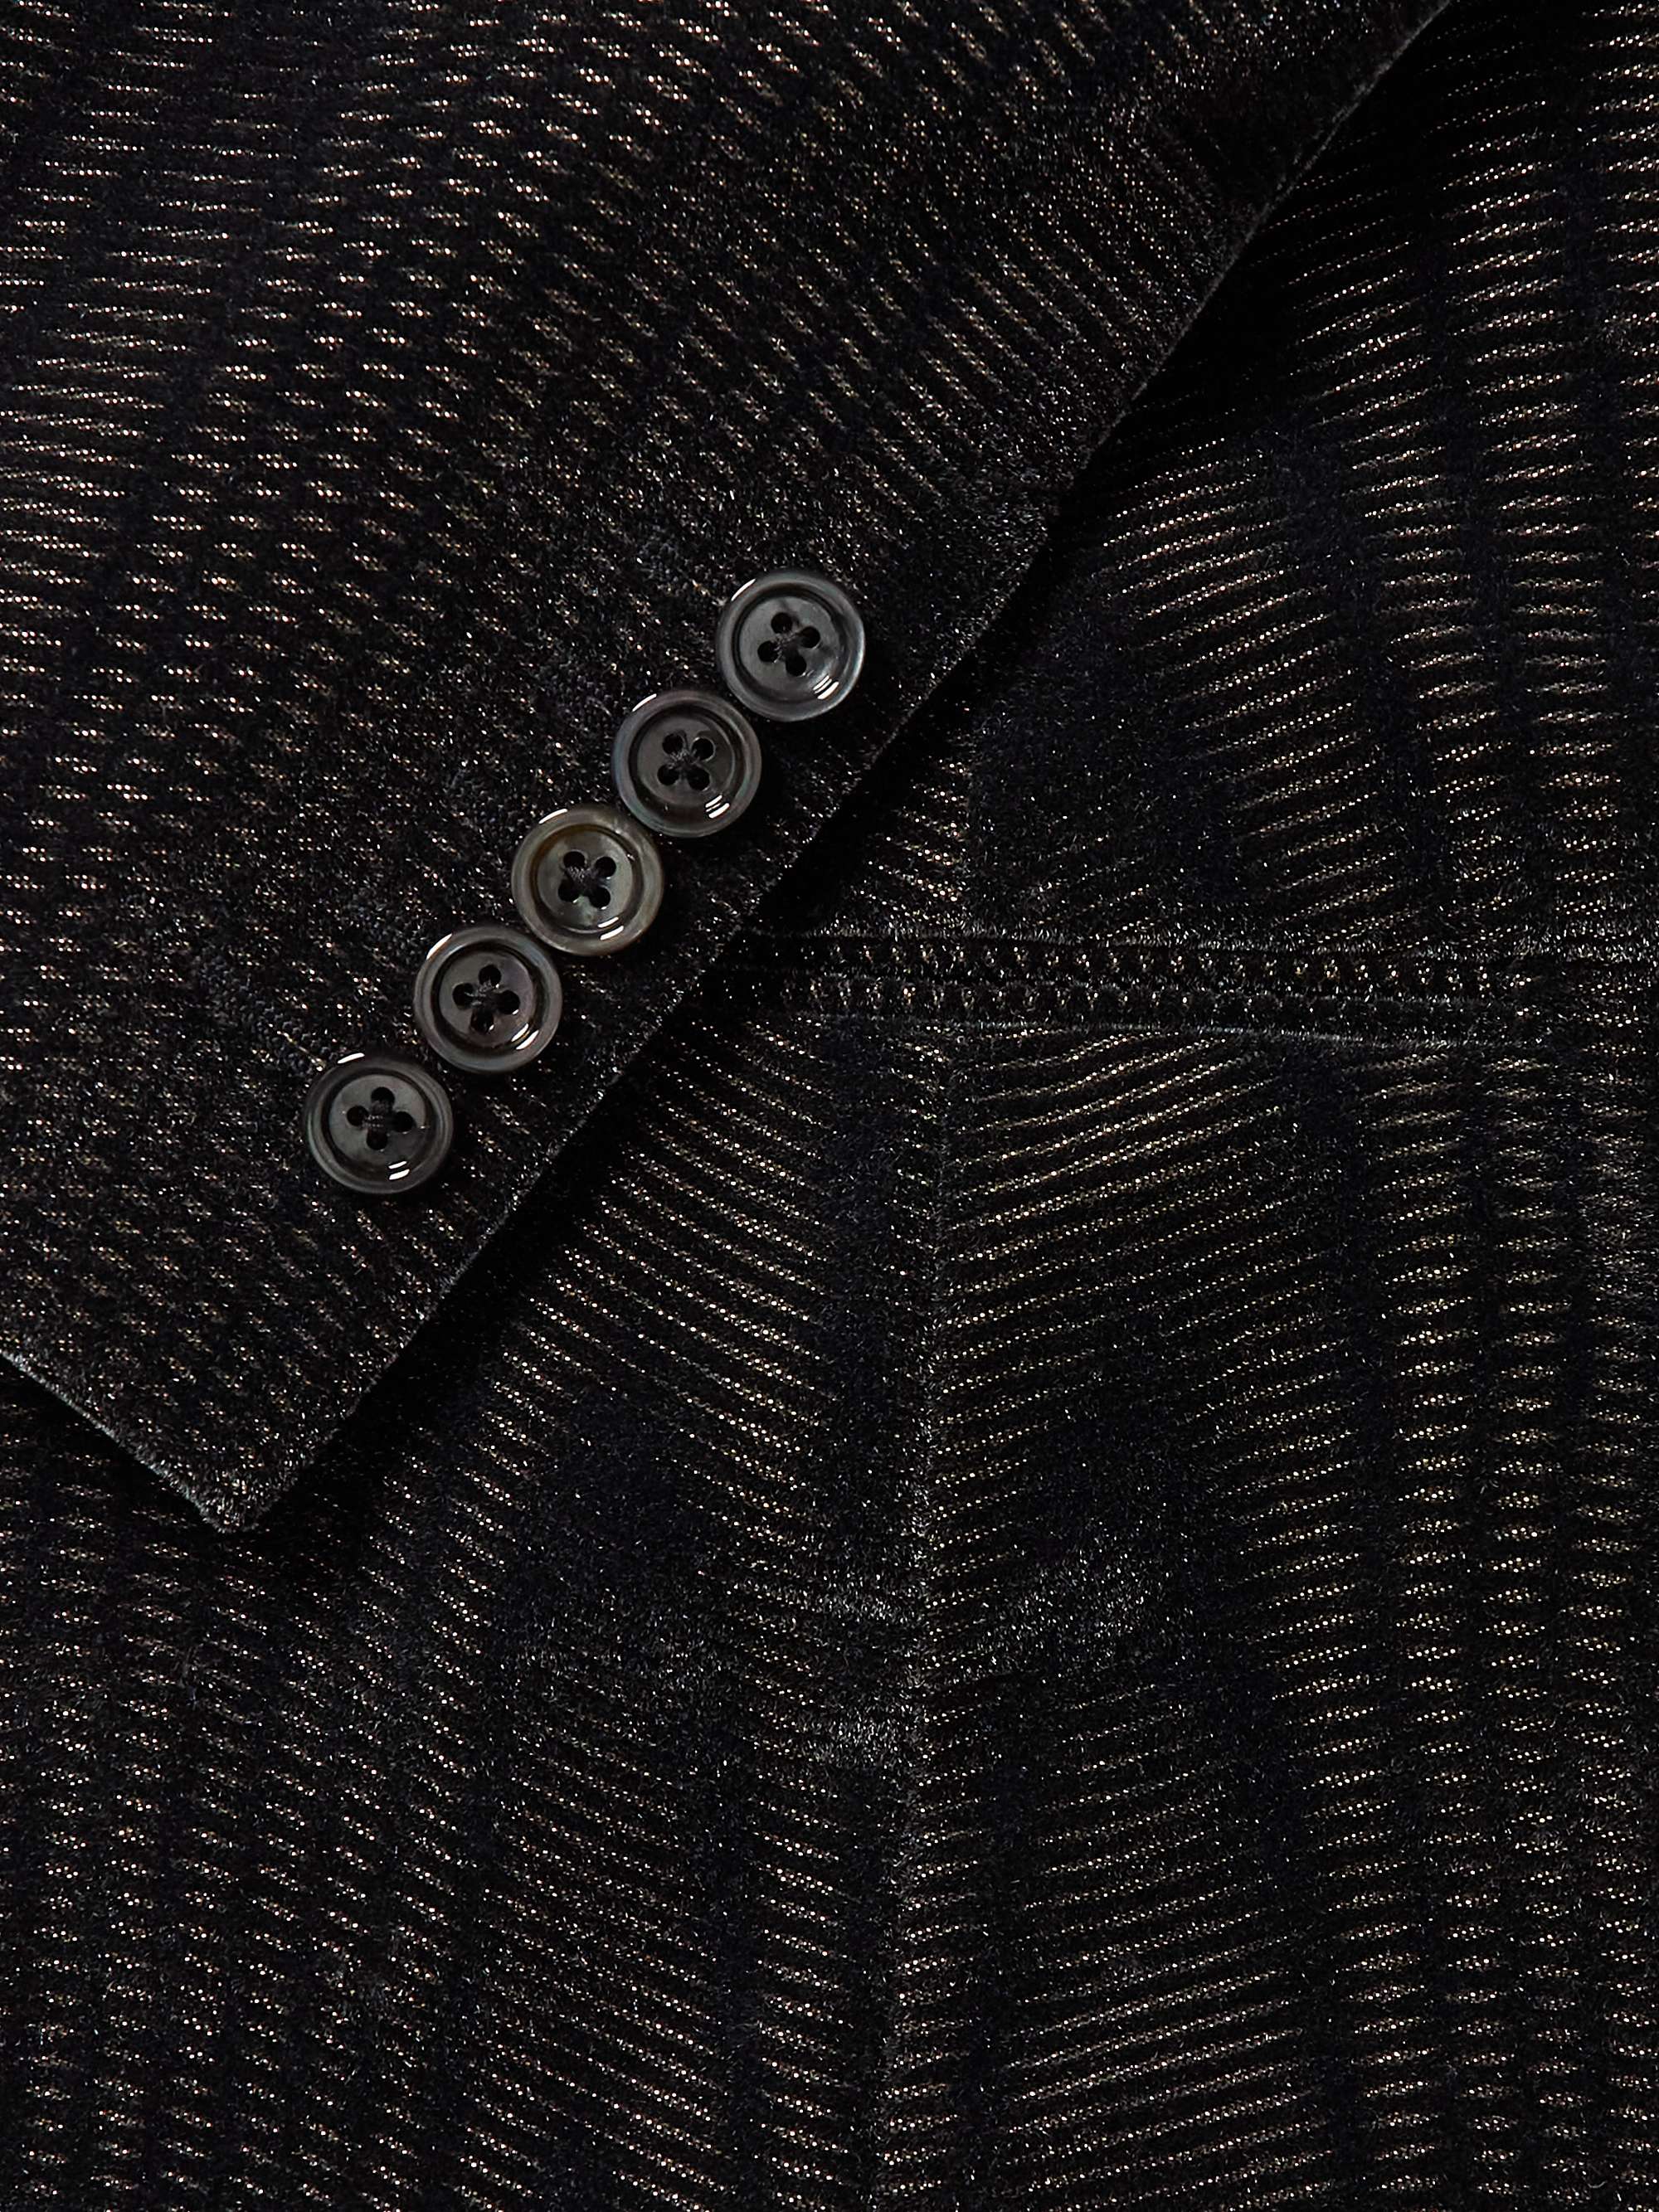 TOM FORD Spencer Slim-Fit Metallic Velvet-Jacquard Tuxedo Jacket